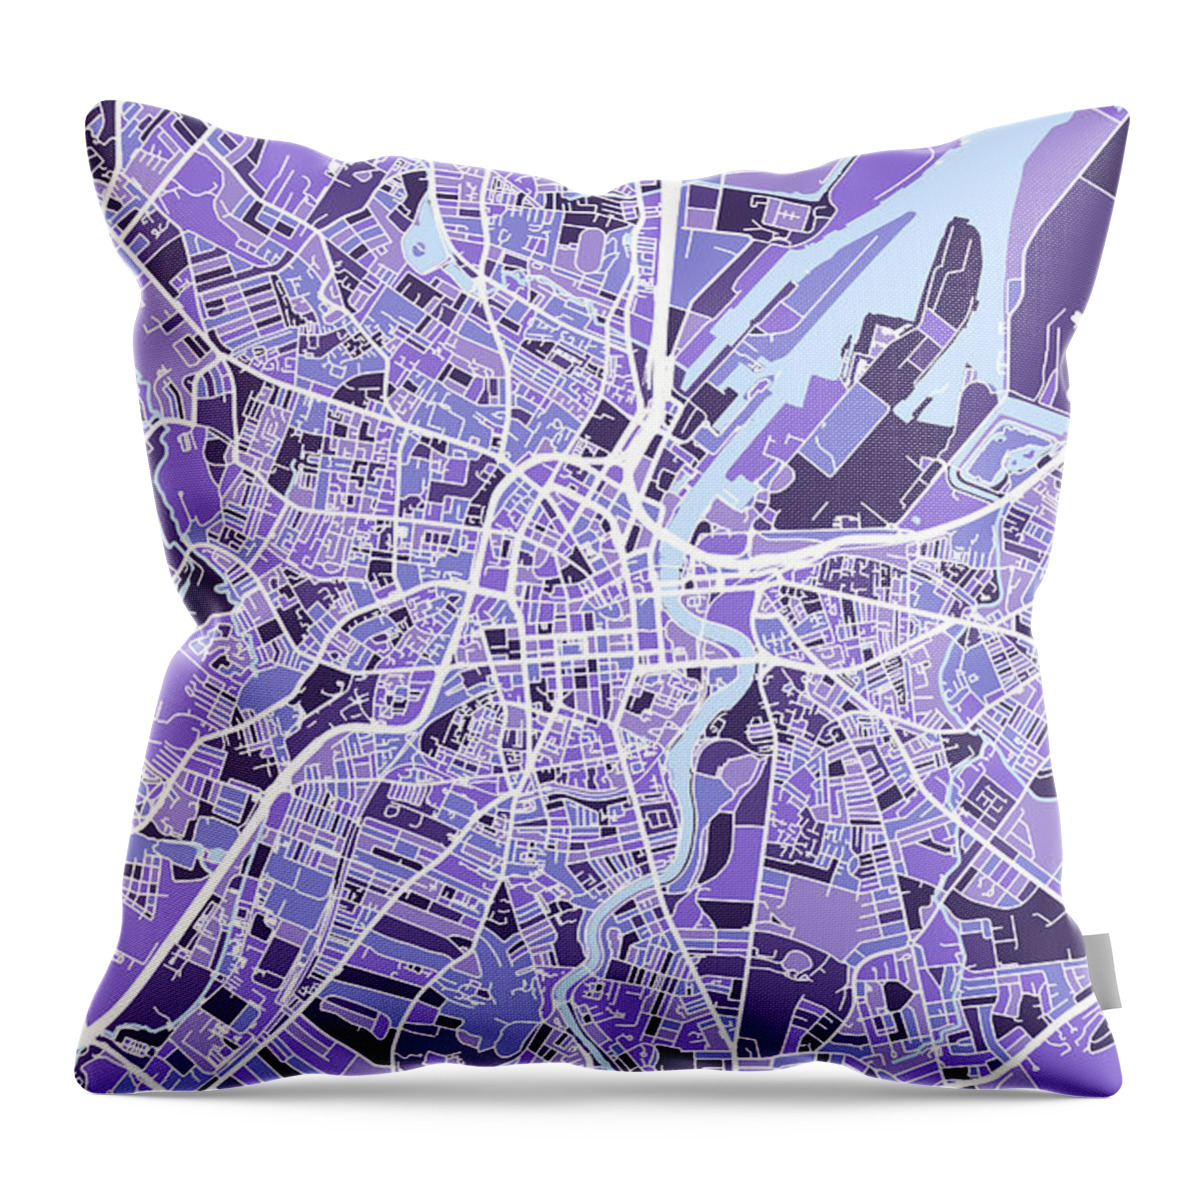 Belfast Throw Pillow featuring the digital art Belfast Northern Ireland City Map #7 by Michael Tompsett